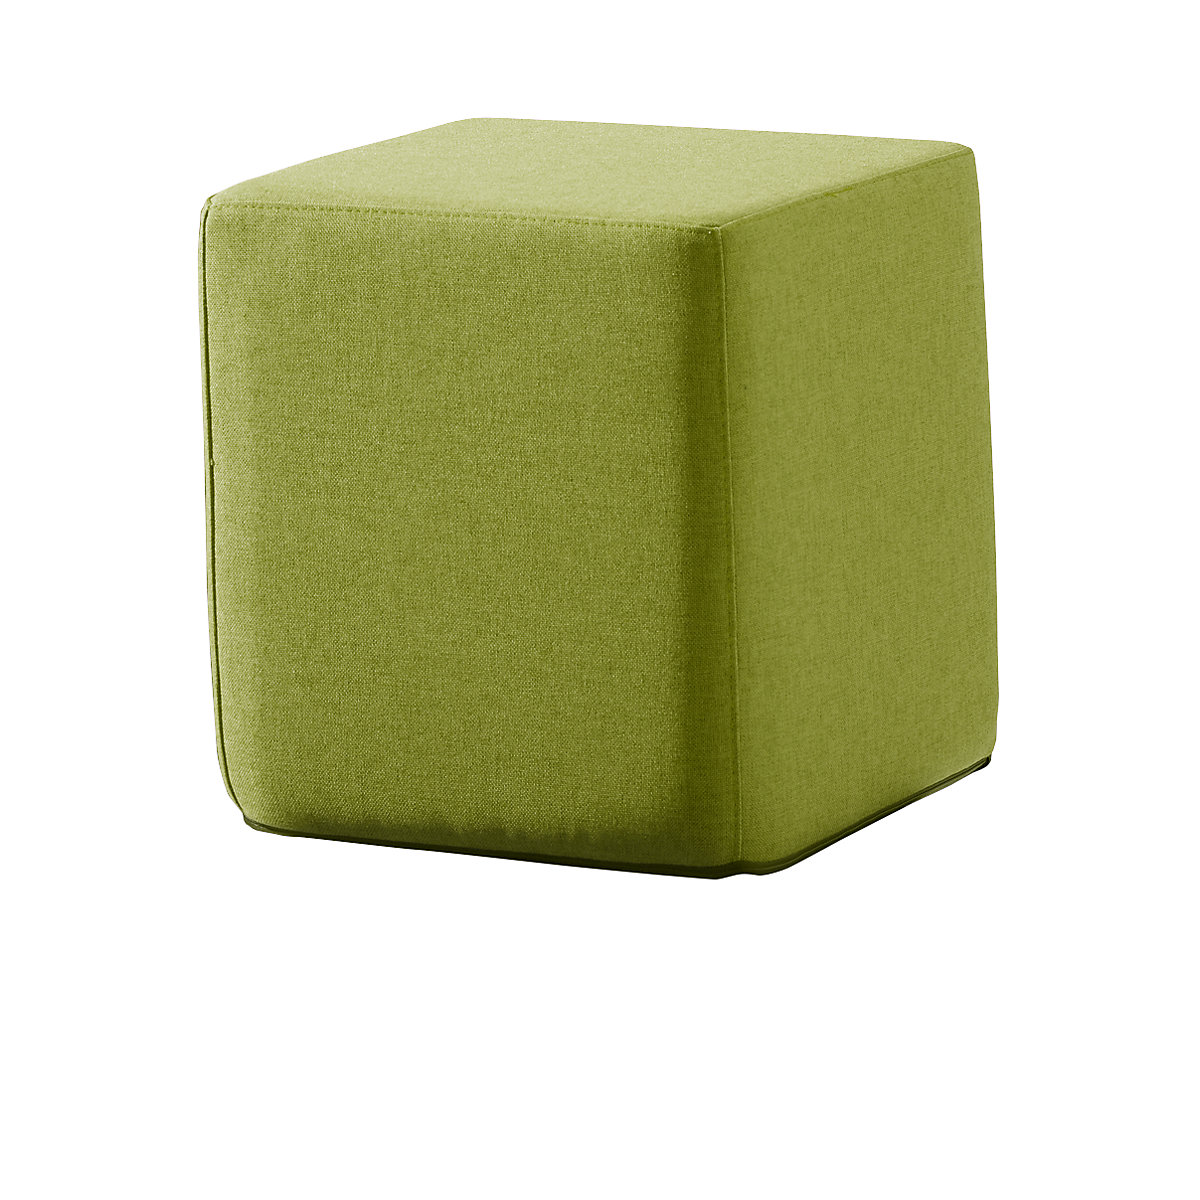 Kocka na sedenie SITTING, v x š x h 420 x 400 x 400 mm, zelená